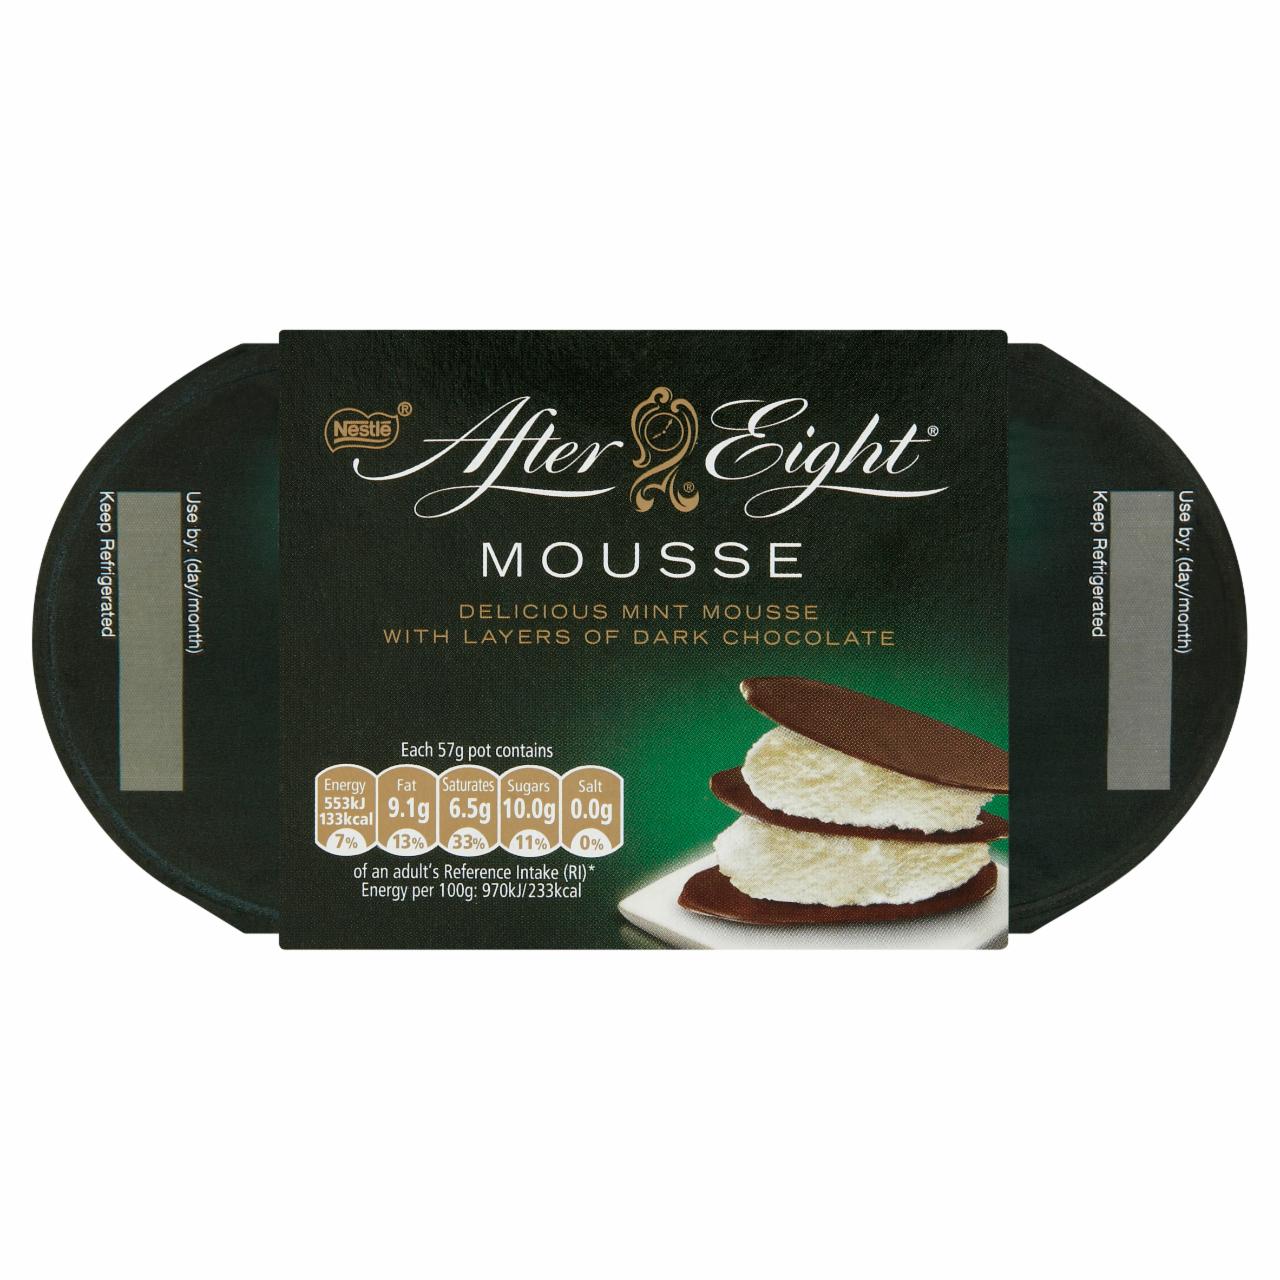 Képek - Nestlé After Eight Mousse borsmenta ízű habkrém étcsokoládéval 4 x 57 g